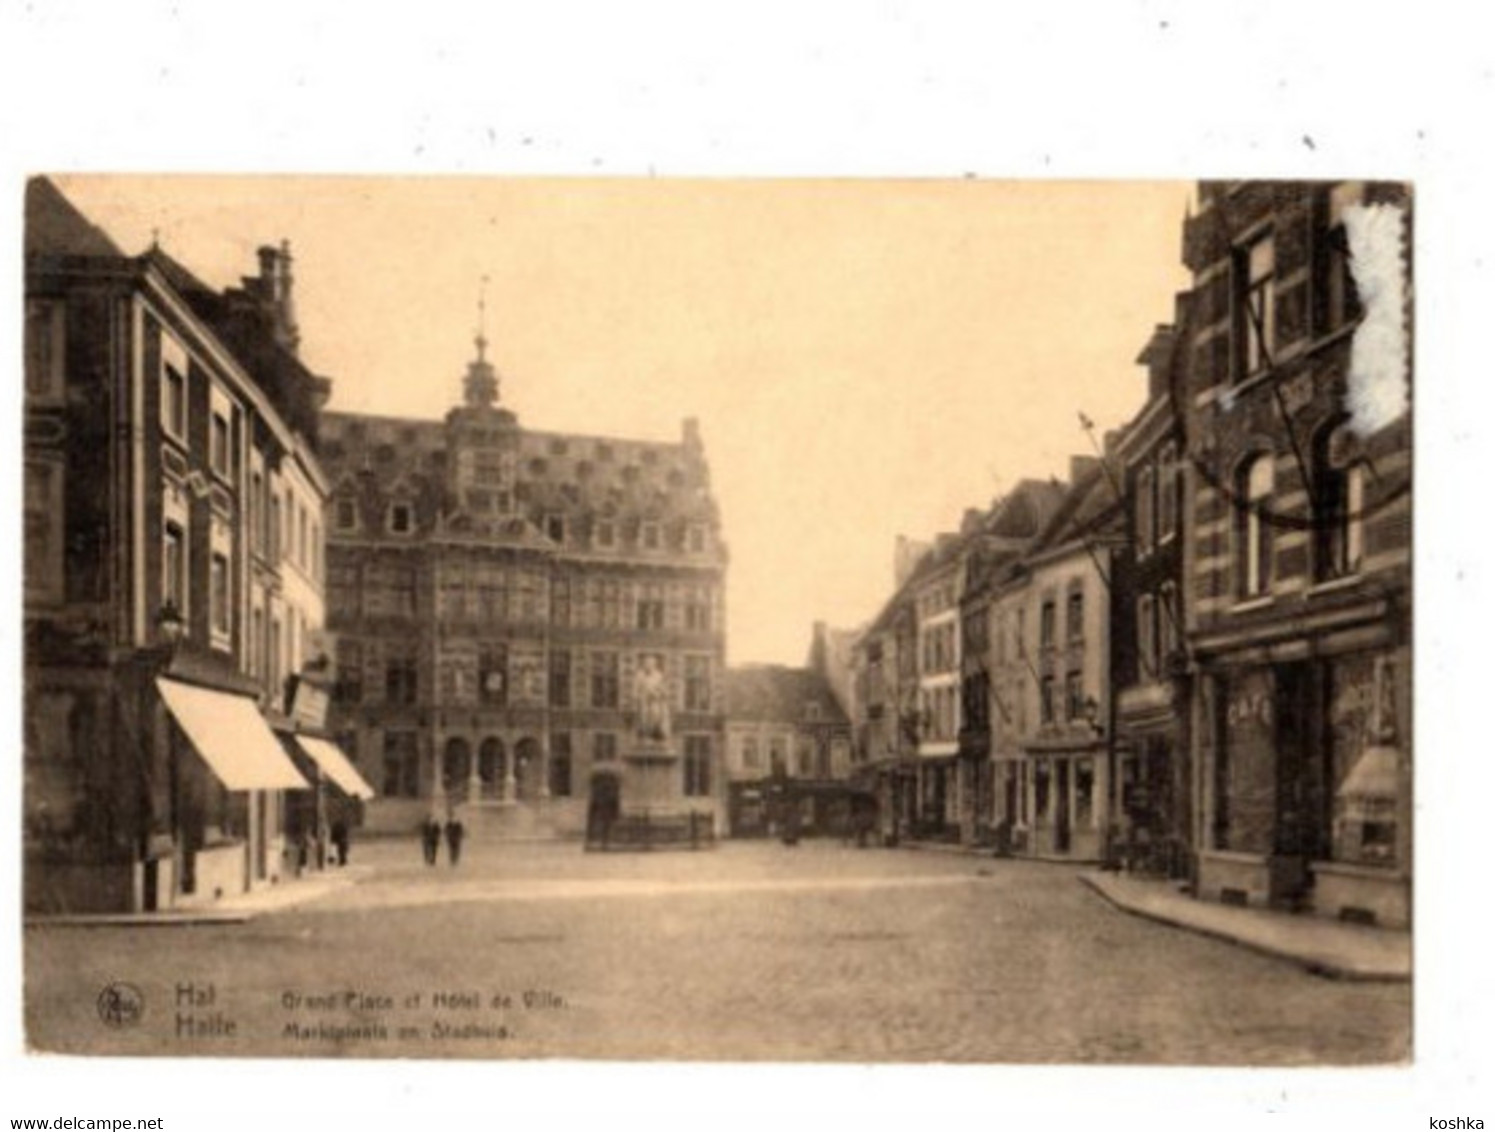 HALLE - Marktplaats En Stadhuis - Verzonden In 1920 - - Halle